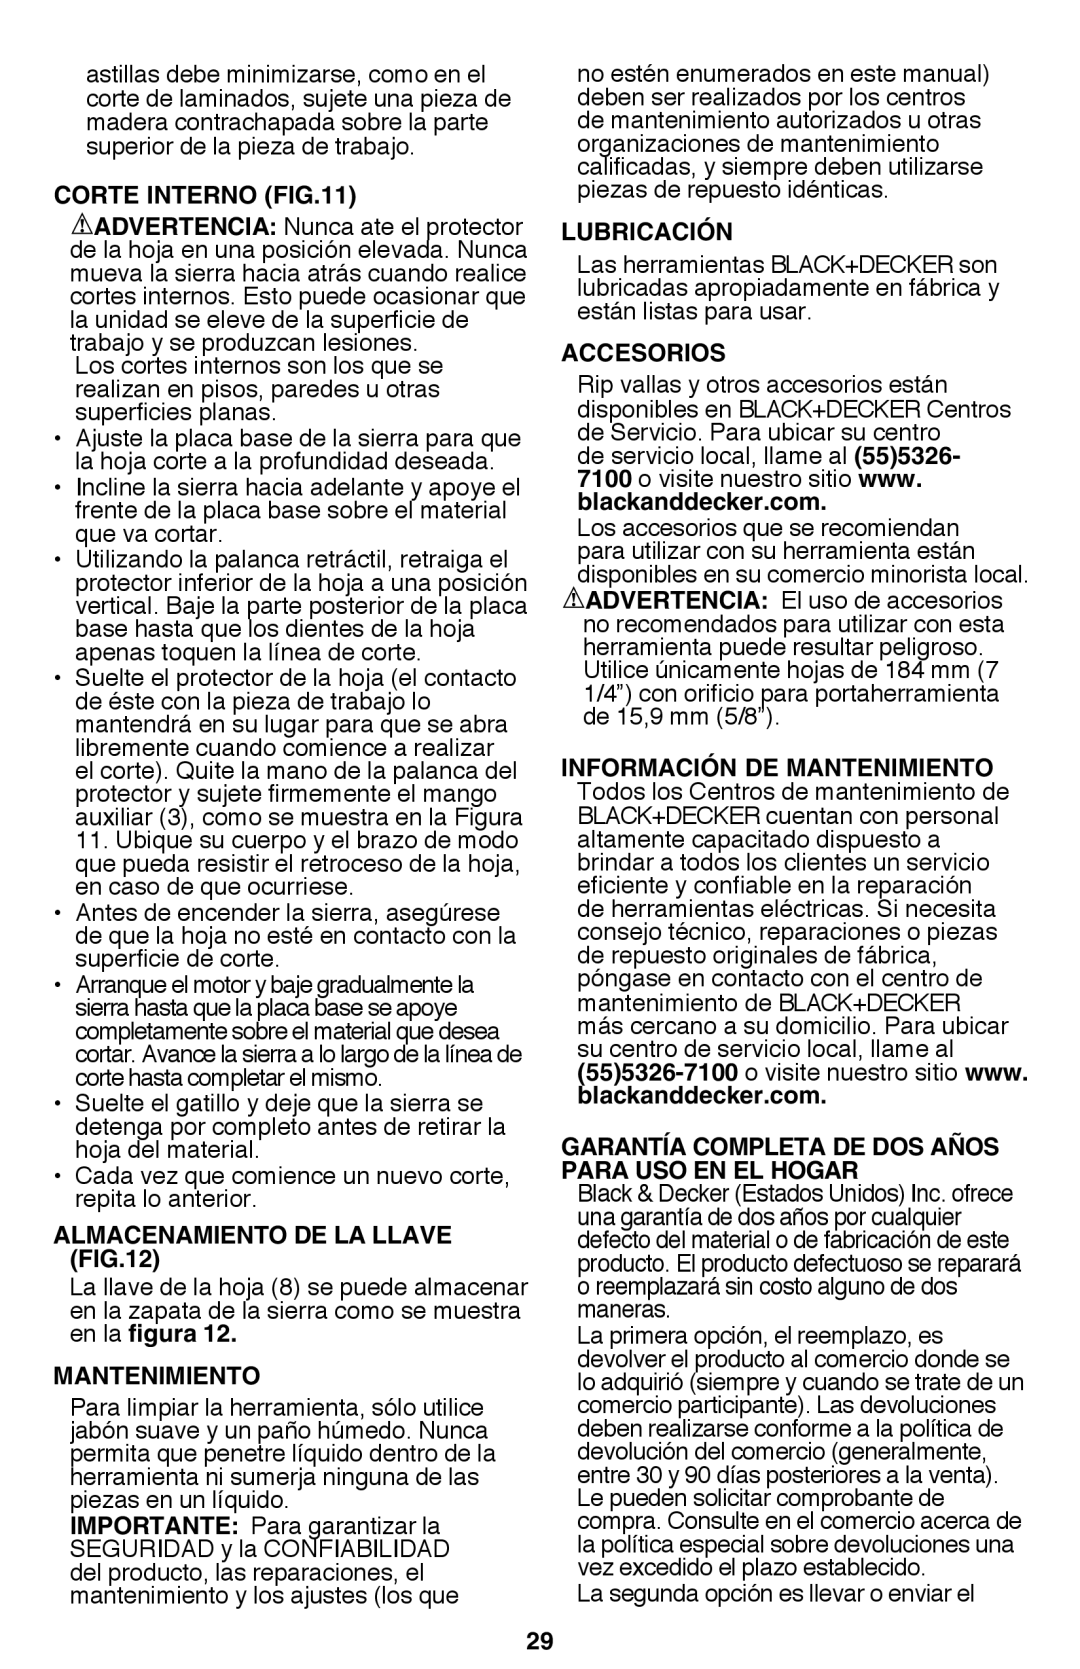 Black & Decker CS1015 instruction manual Corte Interno, Almacenamiento de la llave, Mantenimiento, Lubricación, Accesorios 